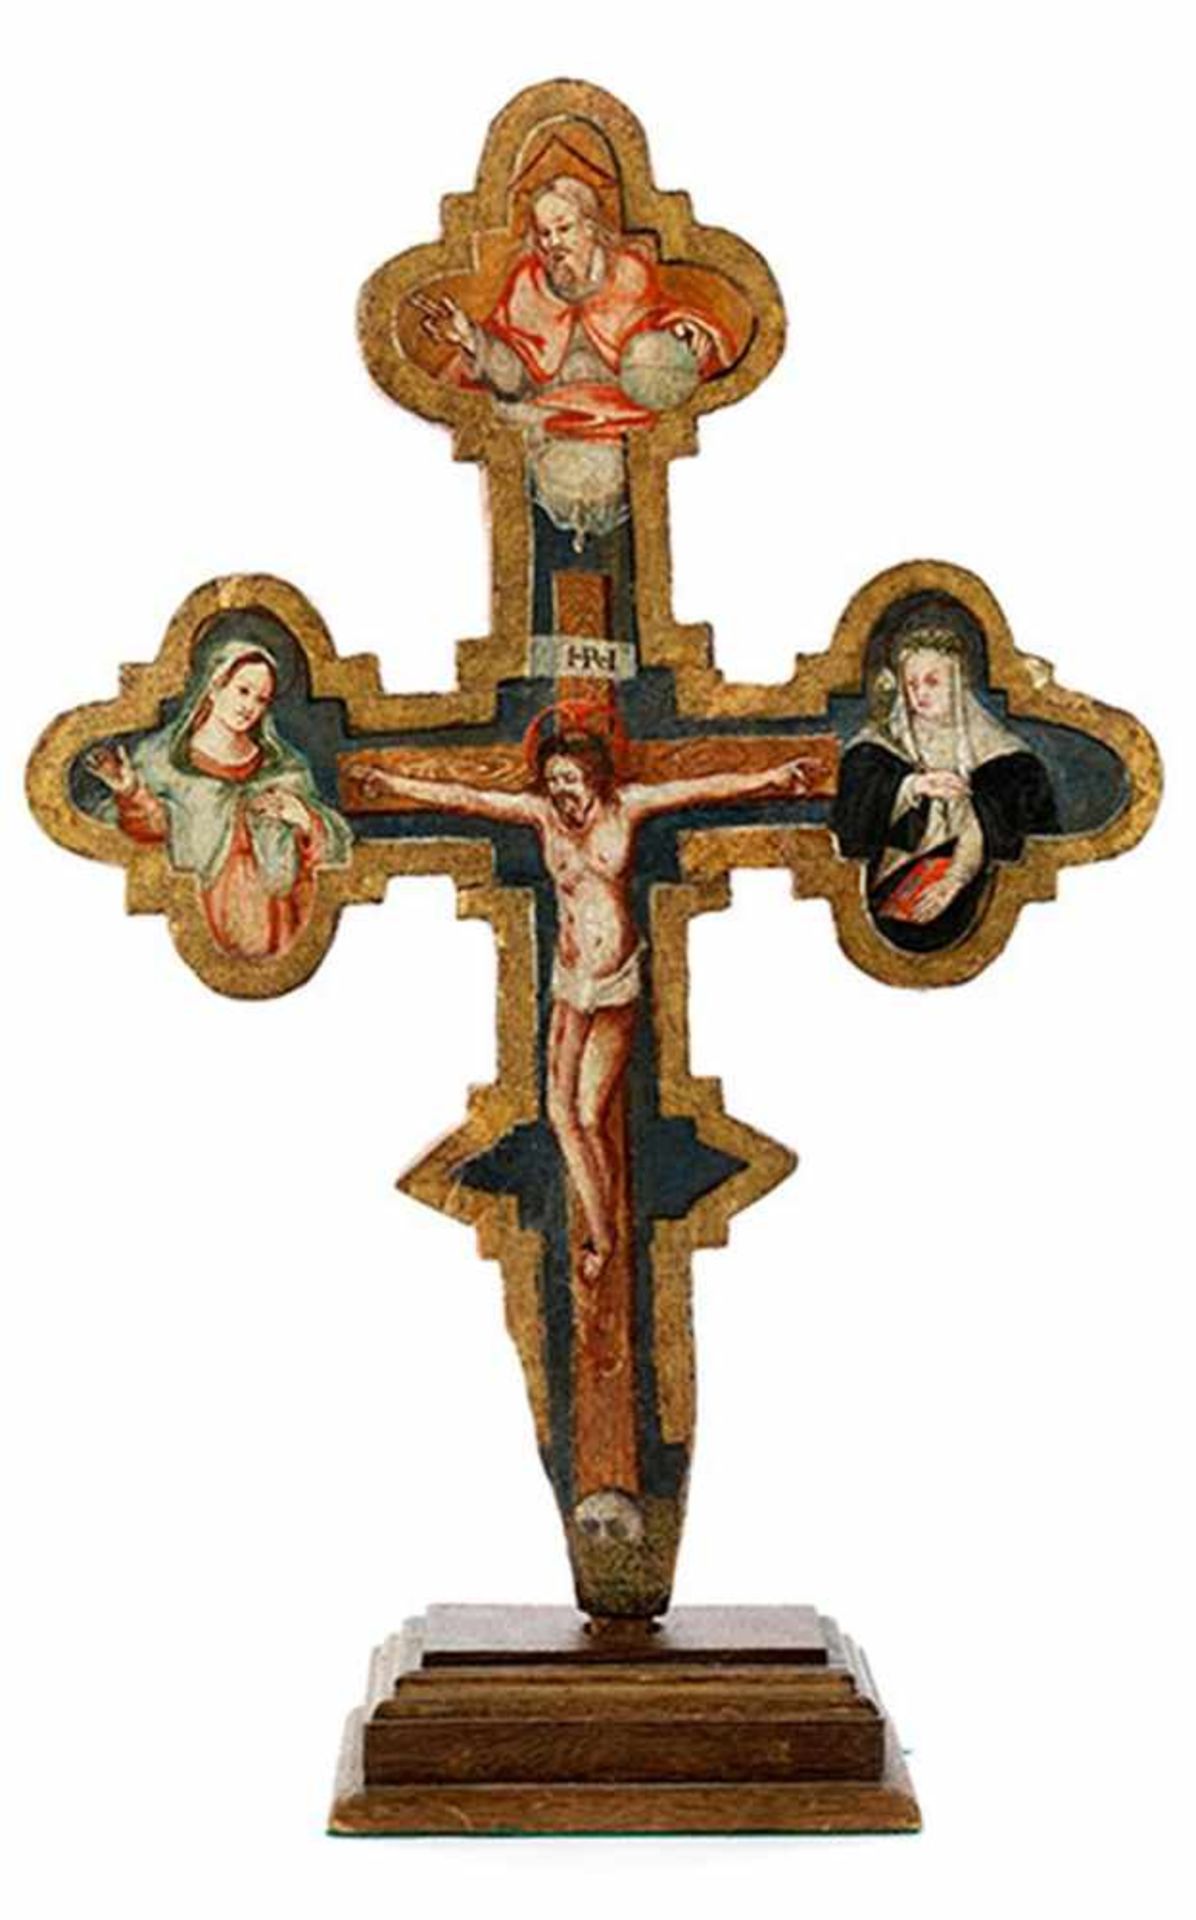 Sieneser Vortragekreuz des ausgehenden 15. Jahrhunderts Höhe: 48 cm. Breite: 32 cm. Holz, bemalt. - Bild 3 aus 3